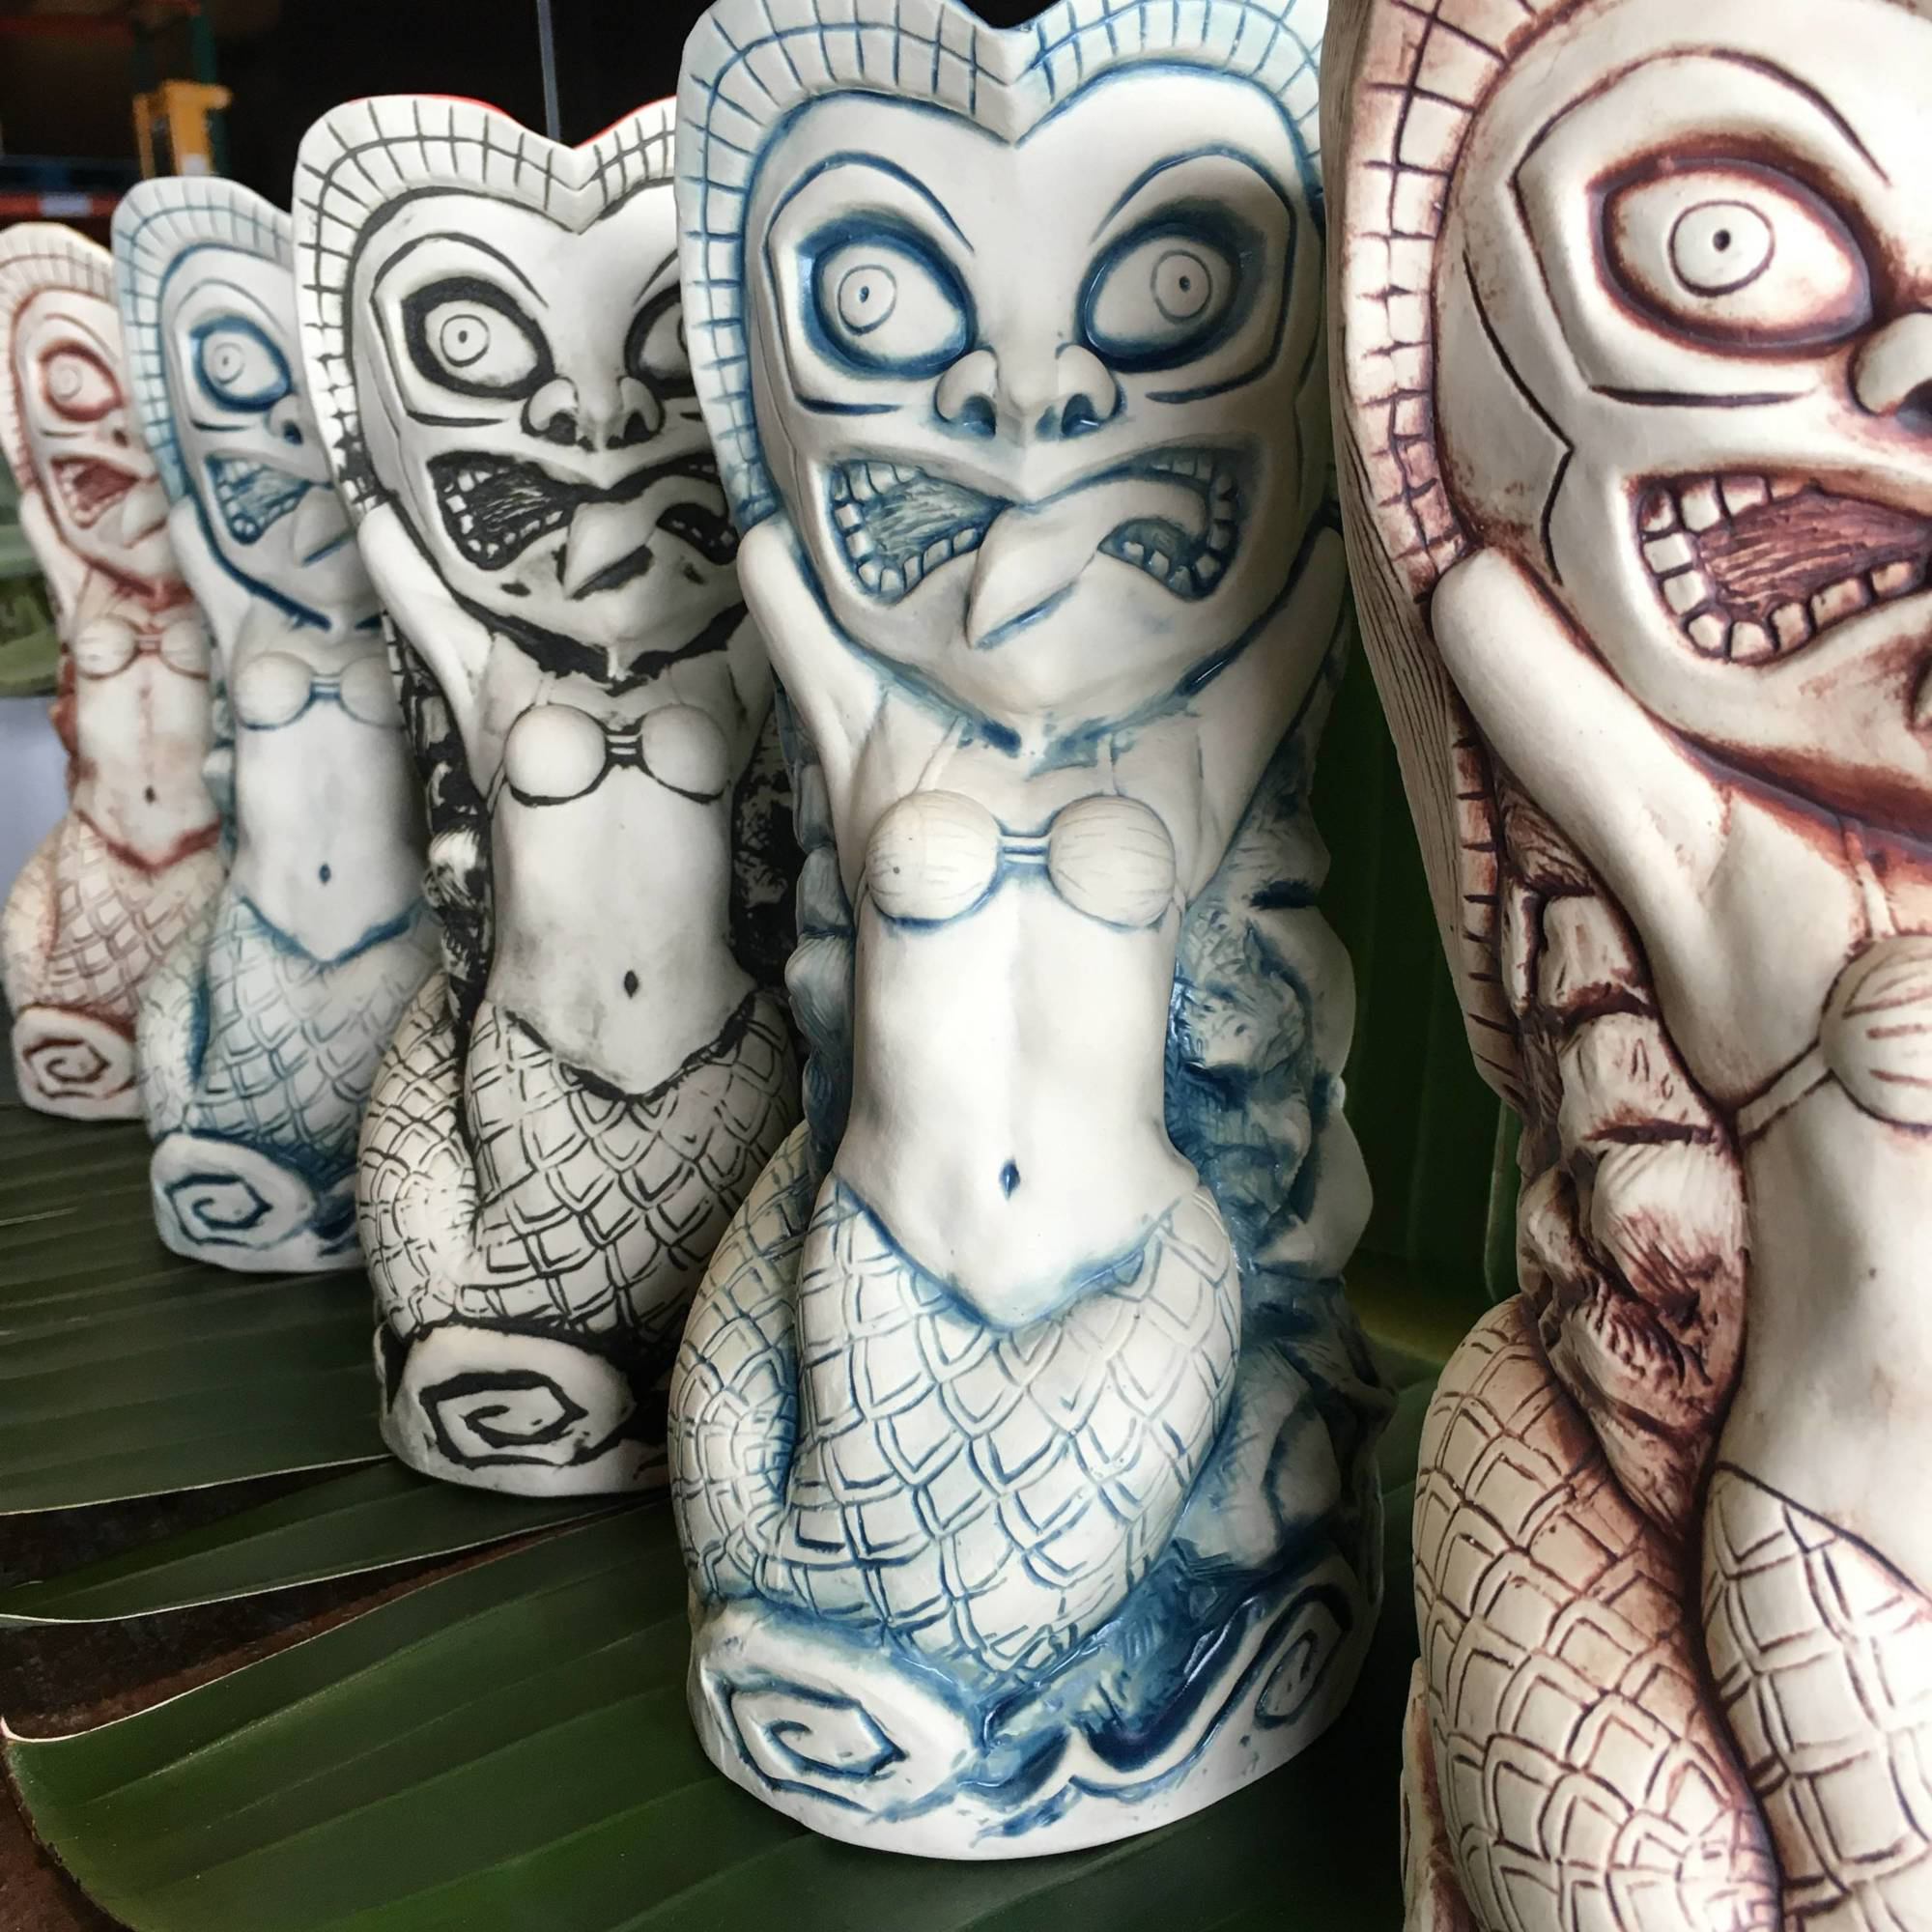 Handmade Tiki Mugs By Chris Shima.